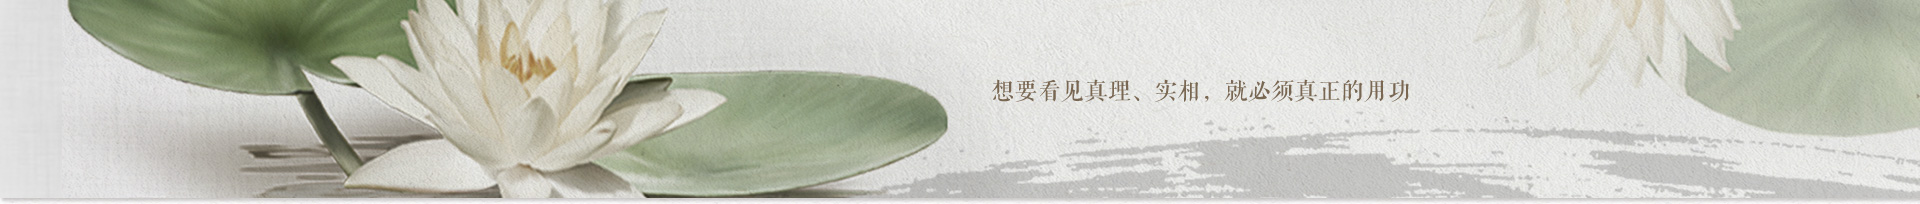 第27期福建资国寺禅七(2012.3.22-30)